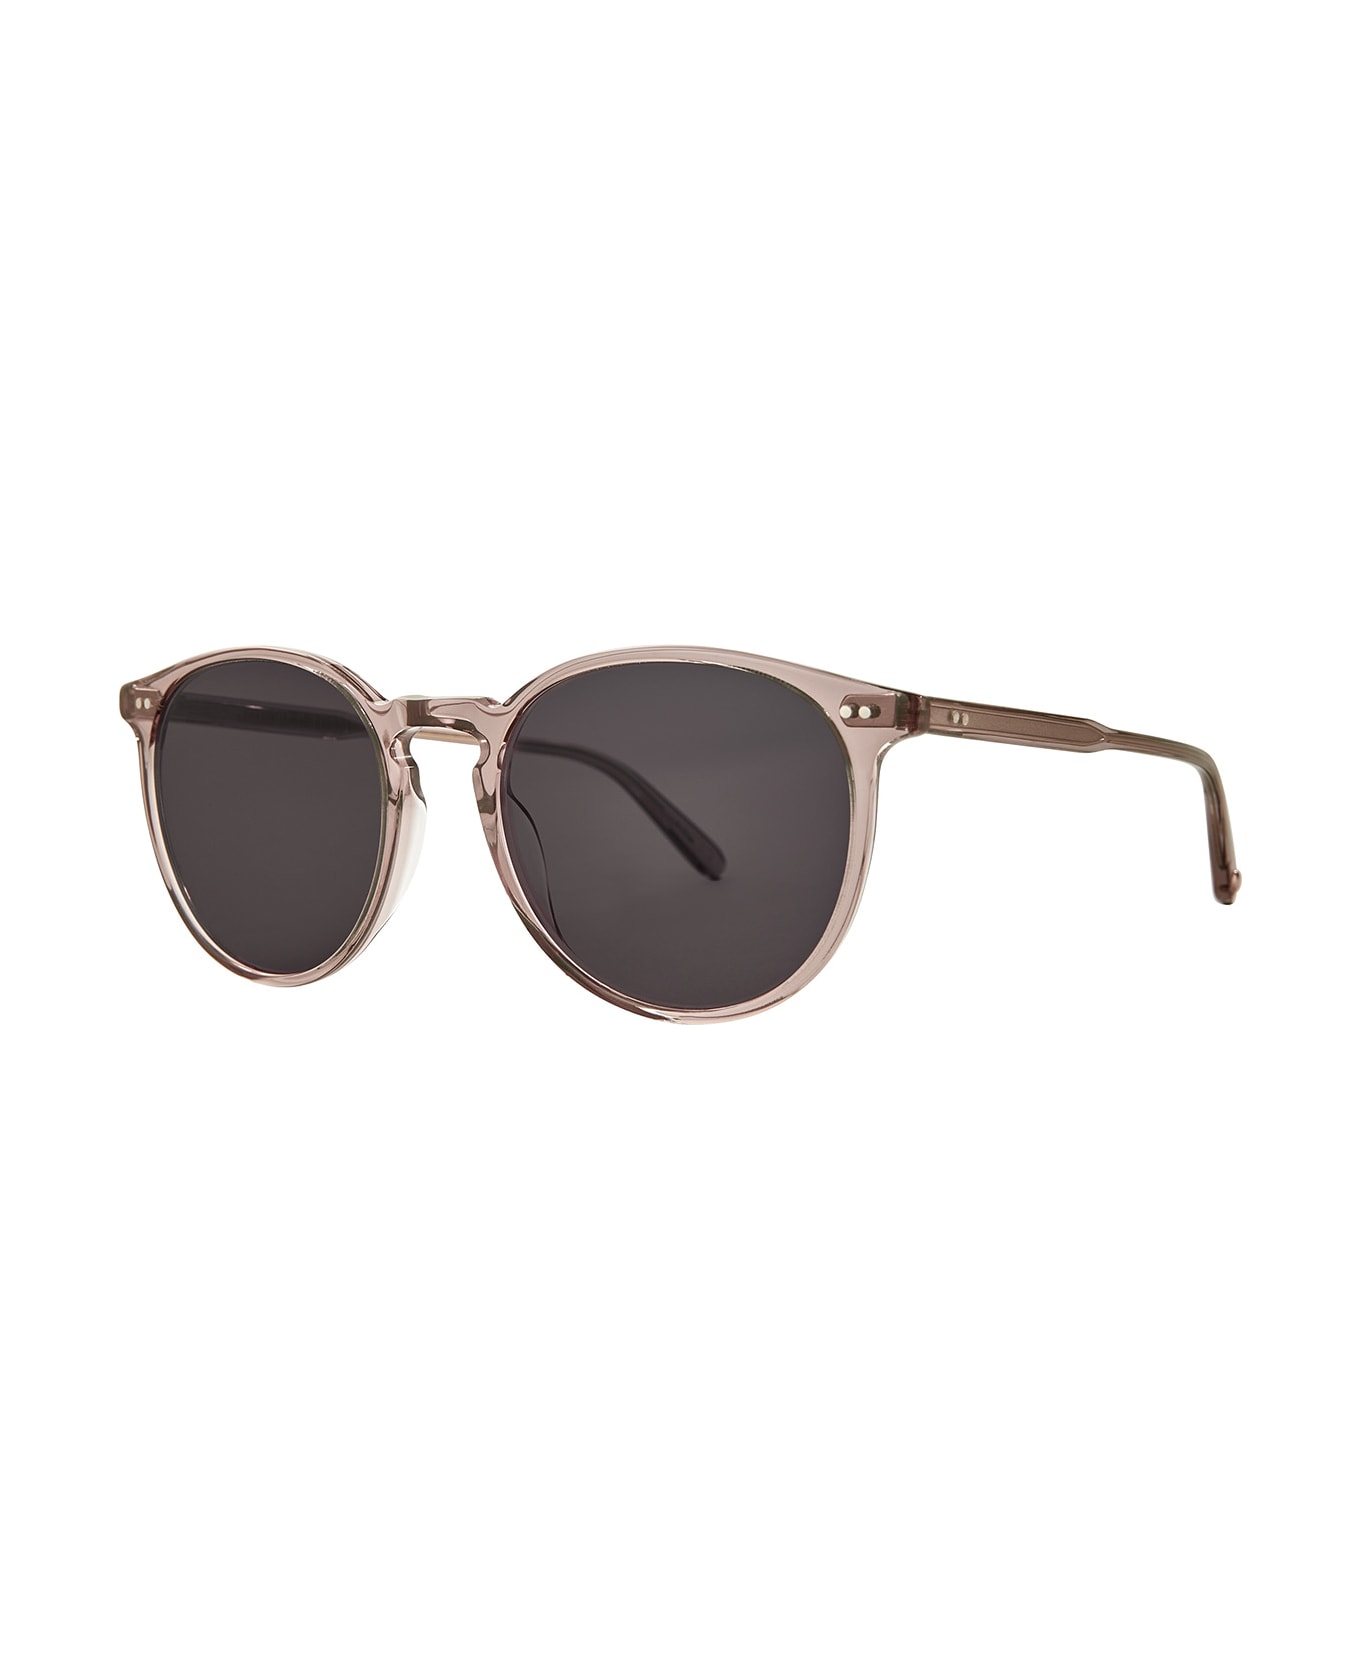 Garrett Leight Morningside Sun Desert Rose/semi-flat Black Licorice Sunglasses - Desert Rose/Semi-Flat Black Licorice